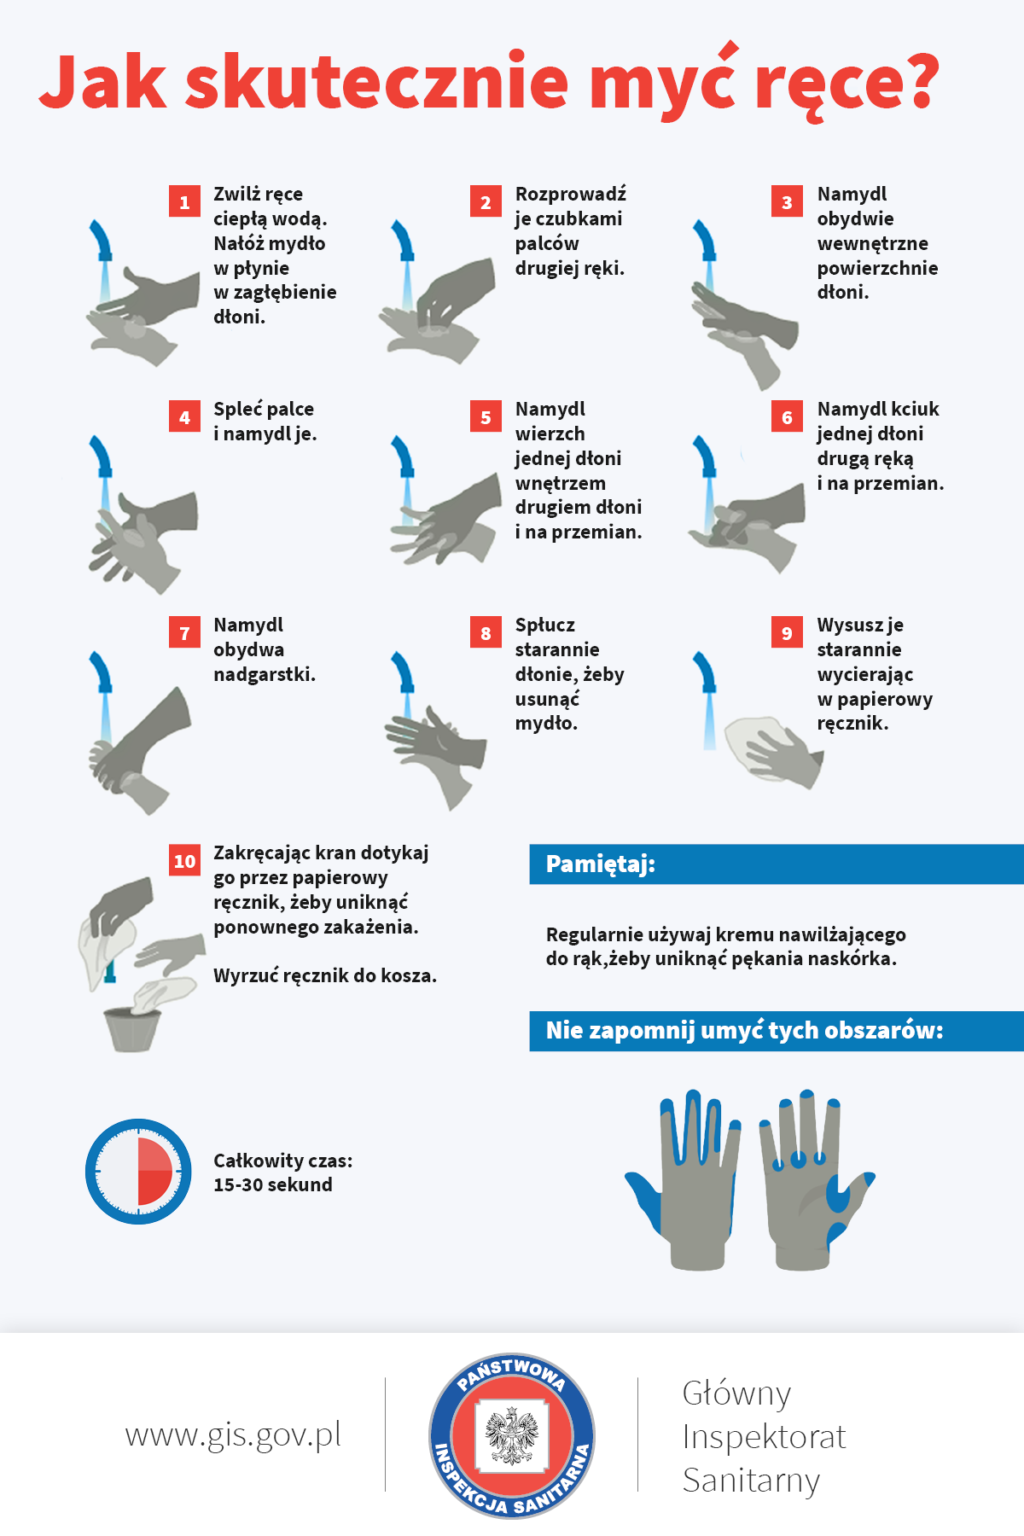 instrukcja mycia rąk: myj ręce ok. 30 sekund; rozpocznij od zmoczenia rąk wodą; nabierz tyle mydła, aby pokryły całą powierzchnię dłoni; dokładnie rozprowadź mydło po powierzchni pocierając o siebie rozprostowane dłonie; pamiętaj o dokładnym umyciu przestrzeni między palcami, grzbietów palców oraz okolic kciuków; na koniec dokładnie opłucz ręce wodą i wytrzyj ręce do sucha jednorazowym ręcznikiem